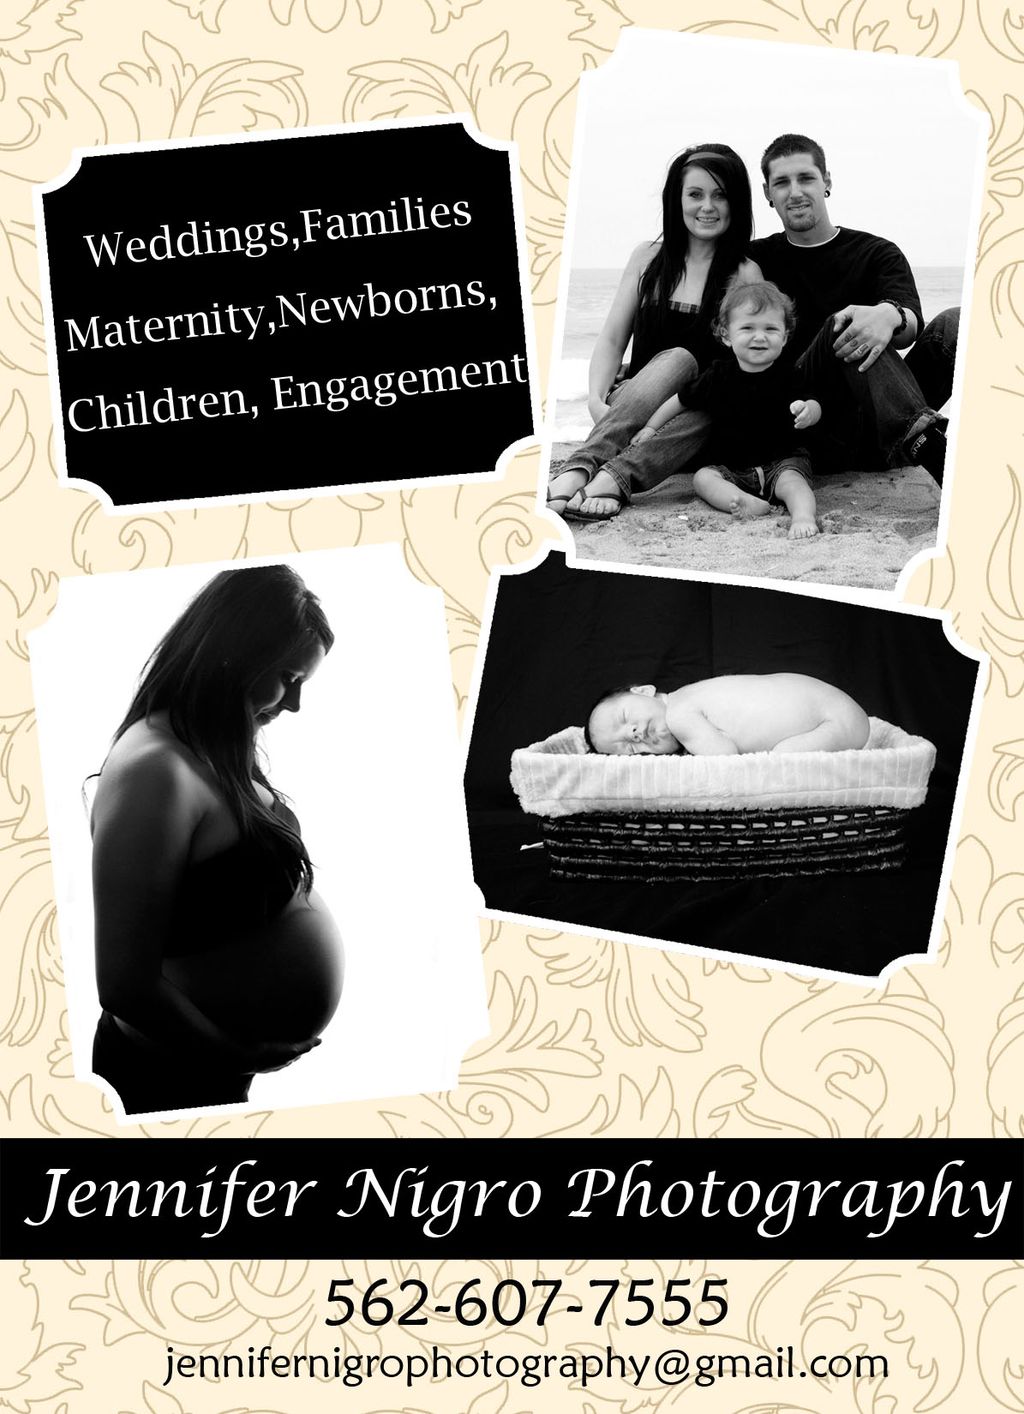 Jennifer Nigro Photography